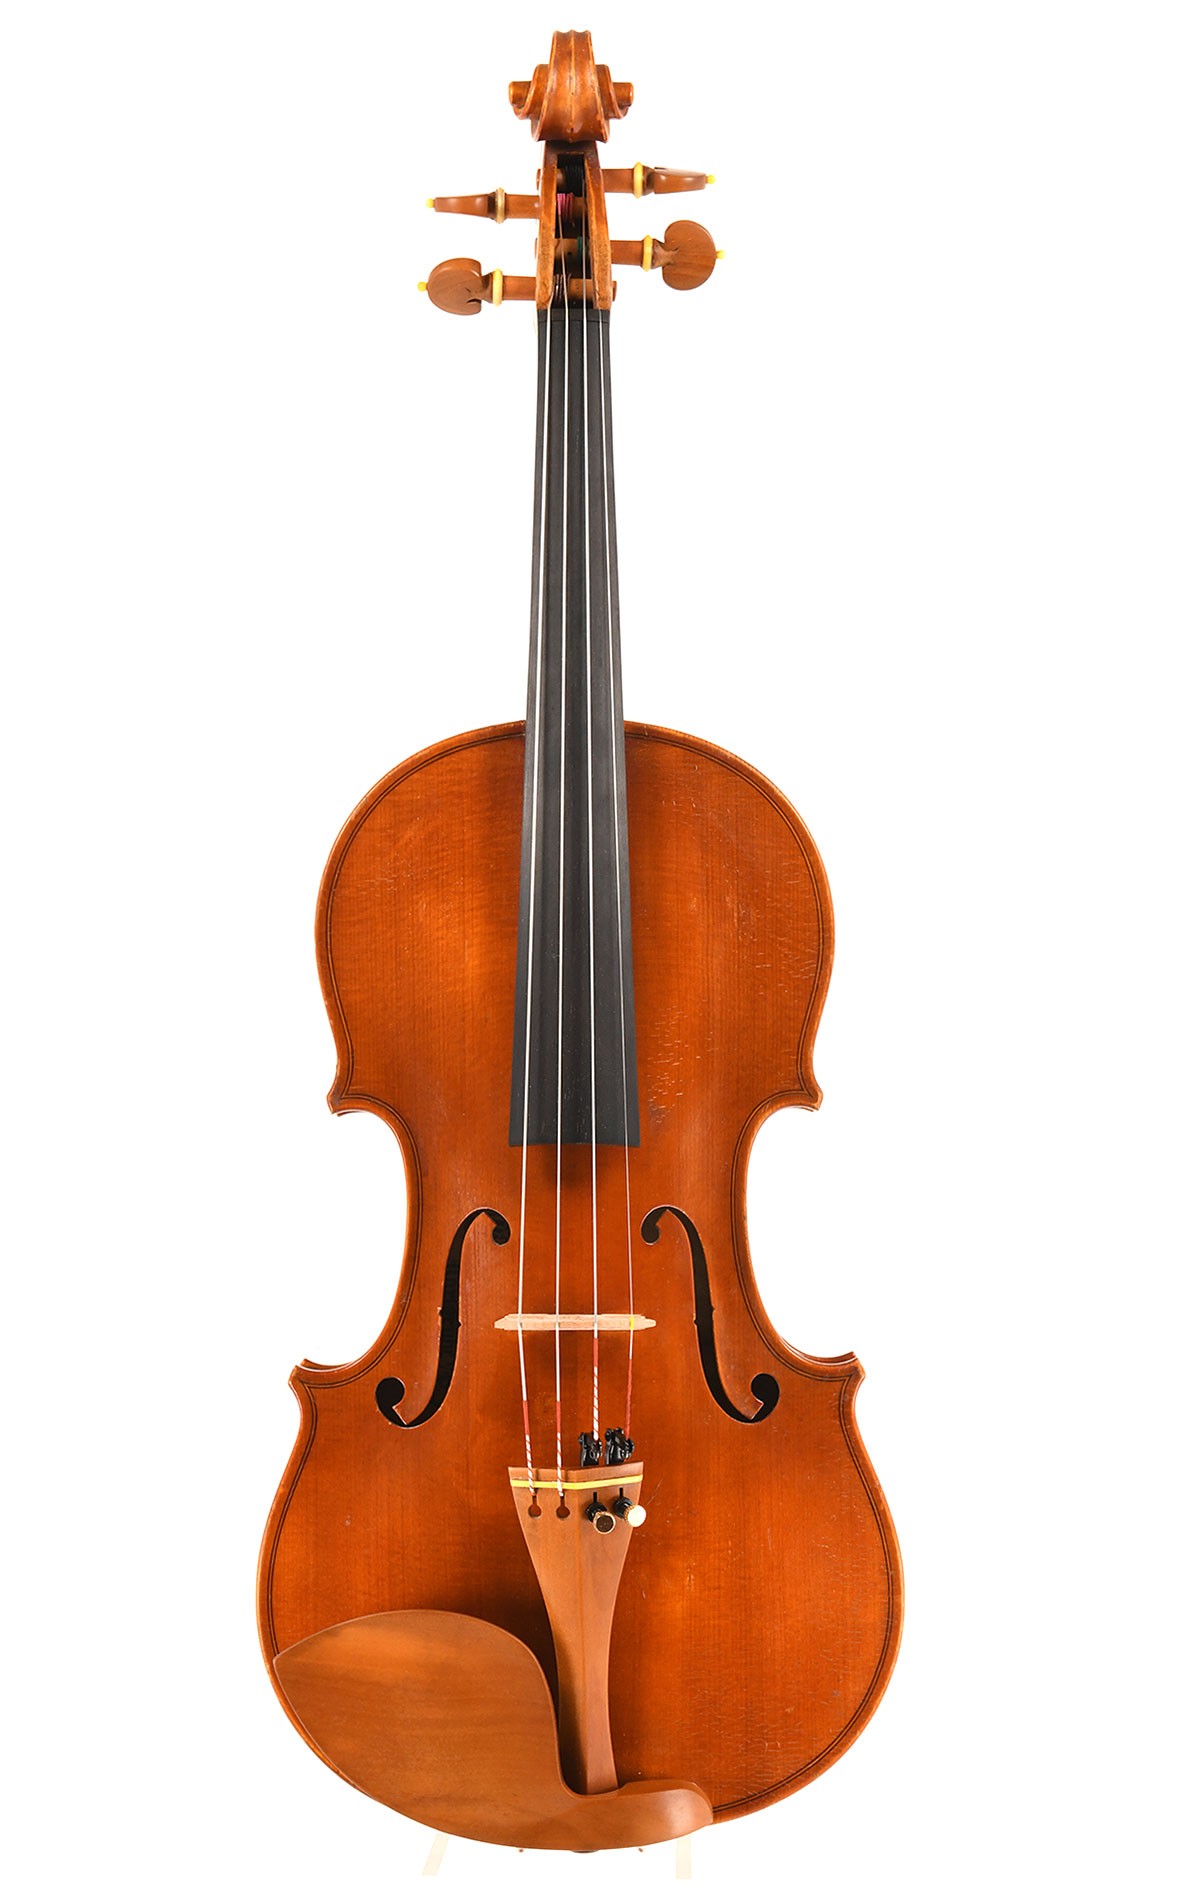 Eugen Wahl, old master violin from Karlsruhe 1928